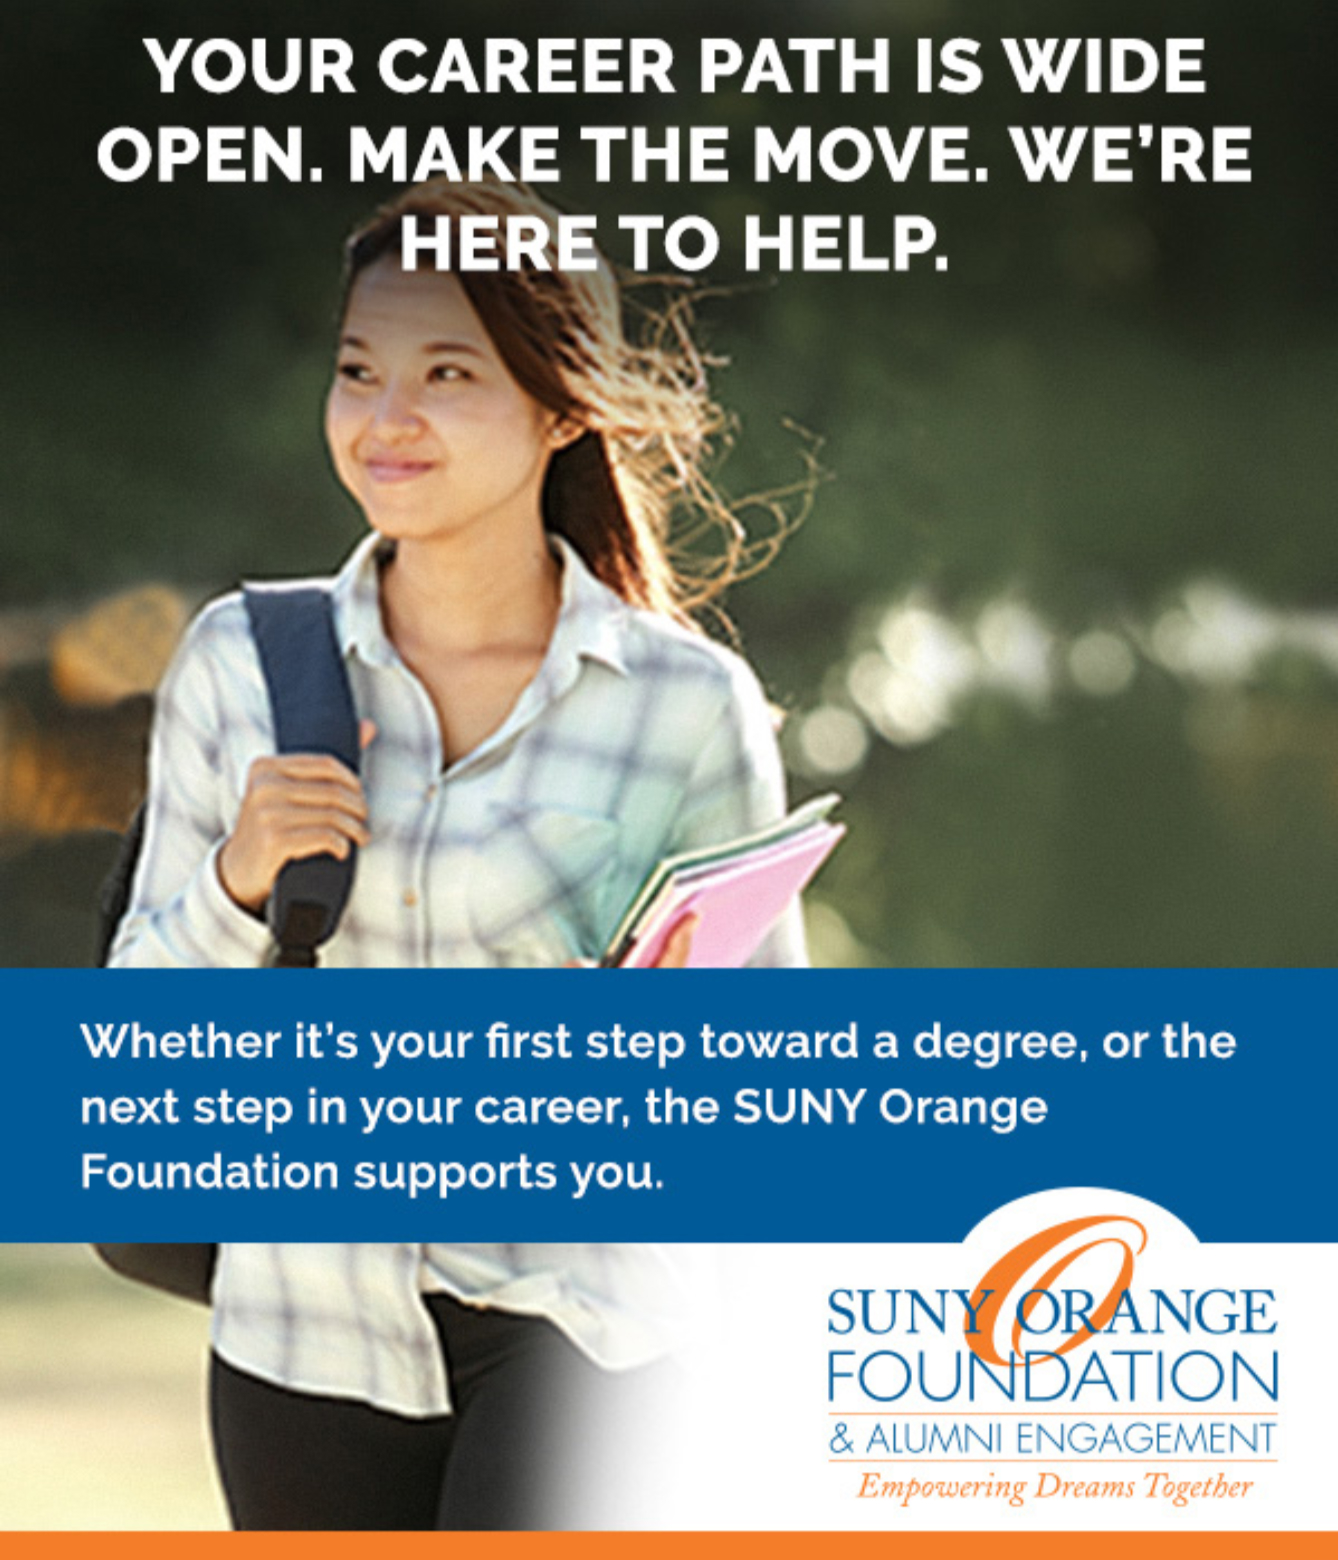 SUNY Orange Foundation